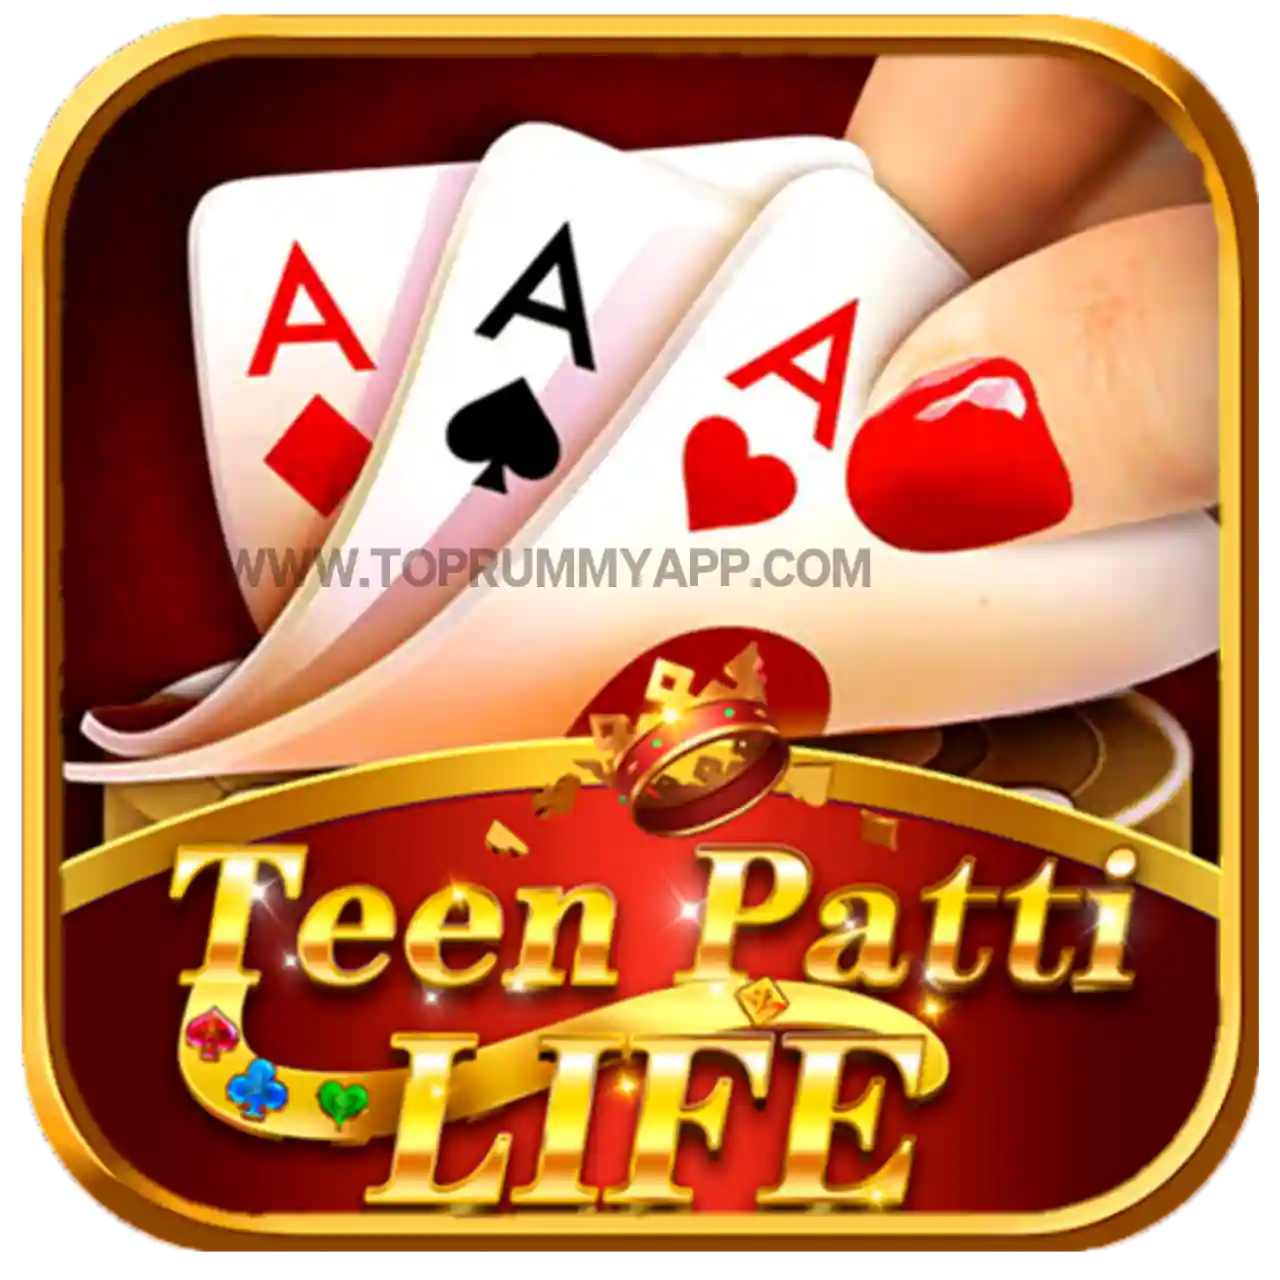 Teen Patti Life Apk Download - Top 5 Teen Patti App List